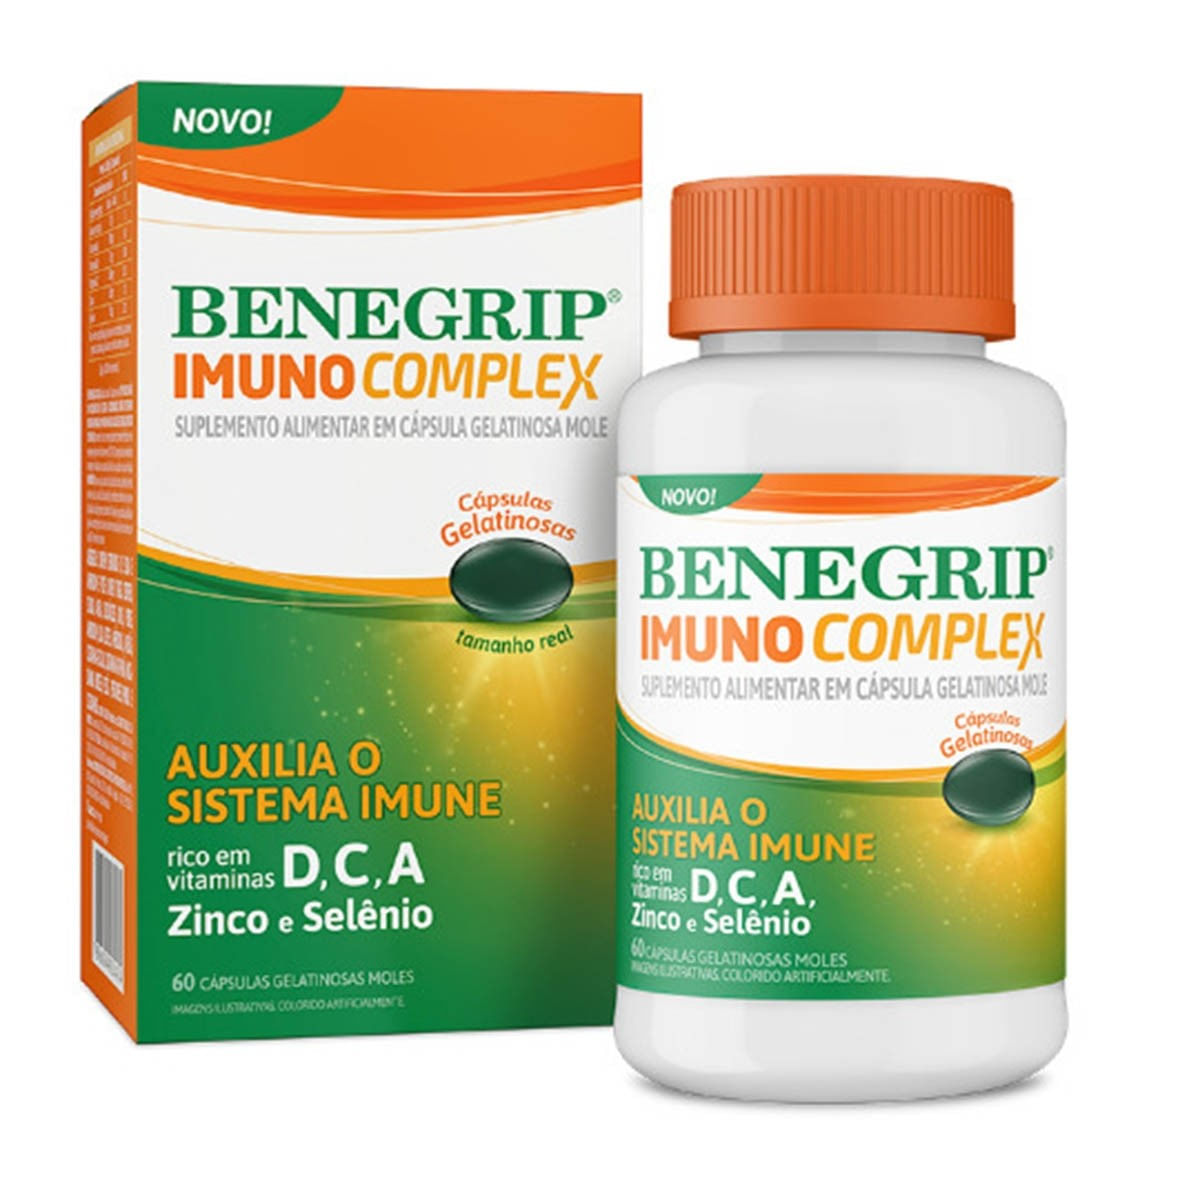 benegrip-imuno-complex-60caps-moles-1.jpg